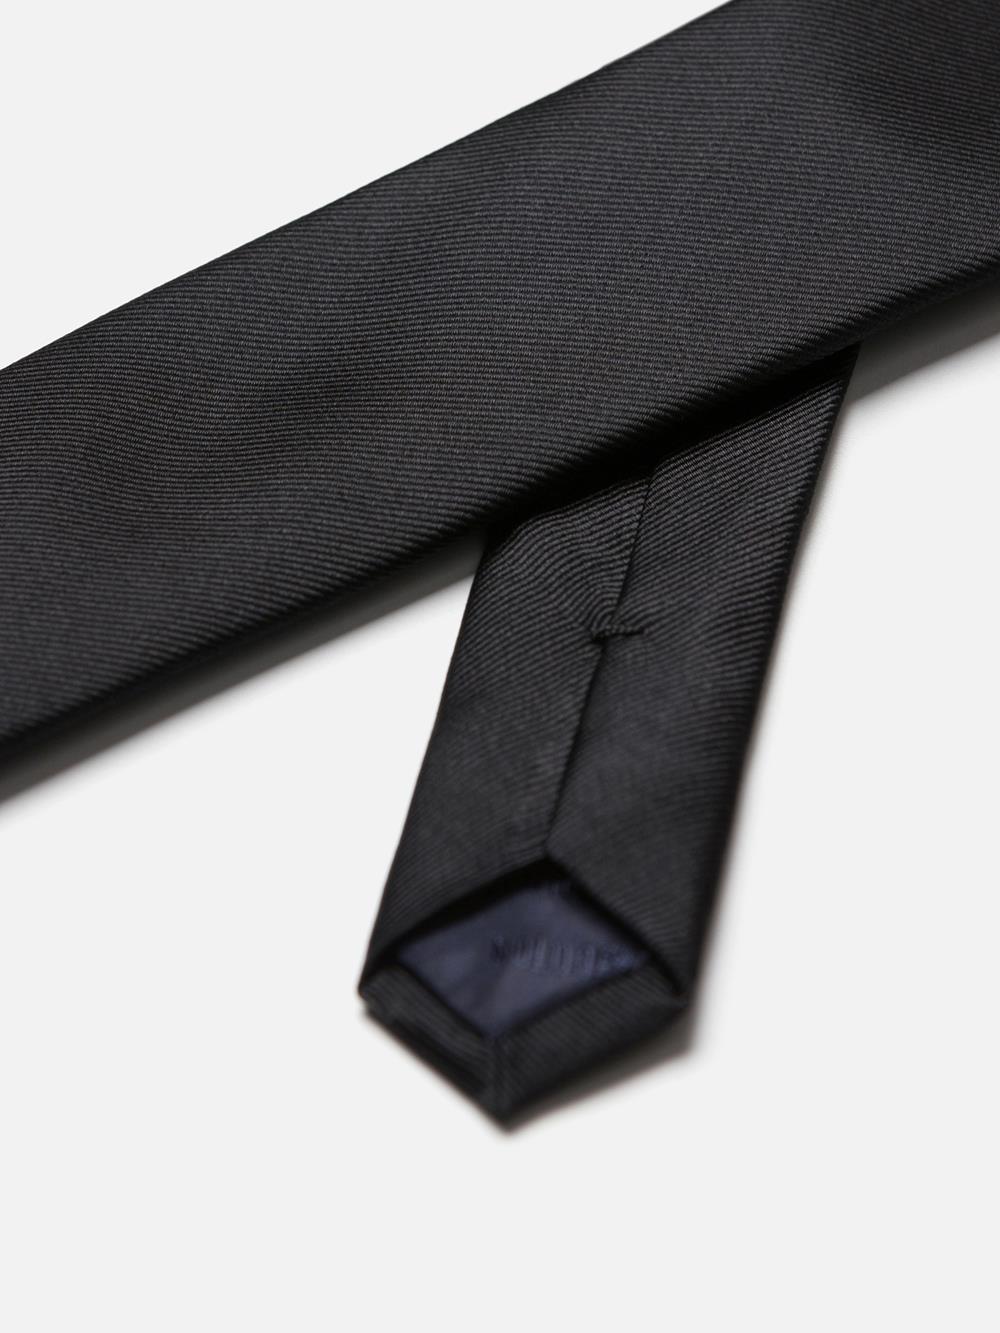 Cravate slim en soie sergée noire 